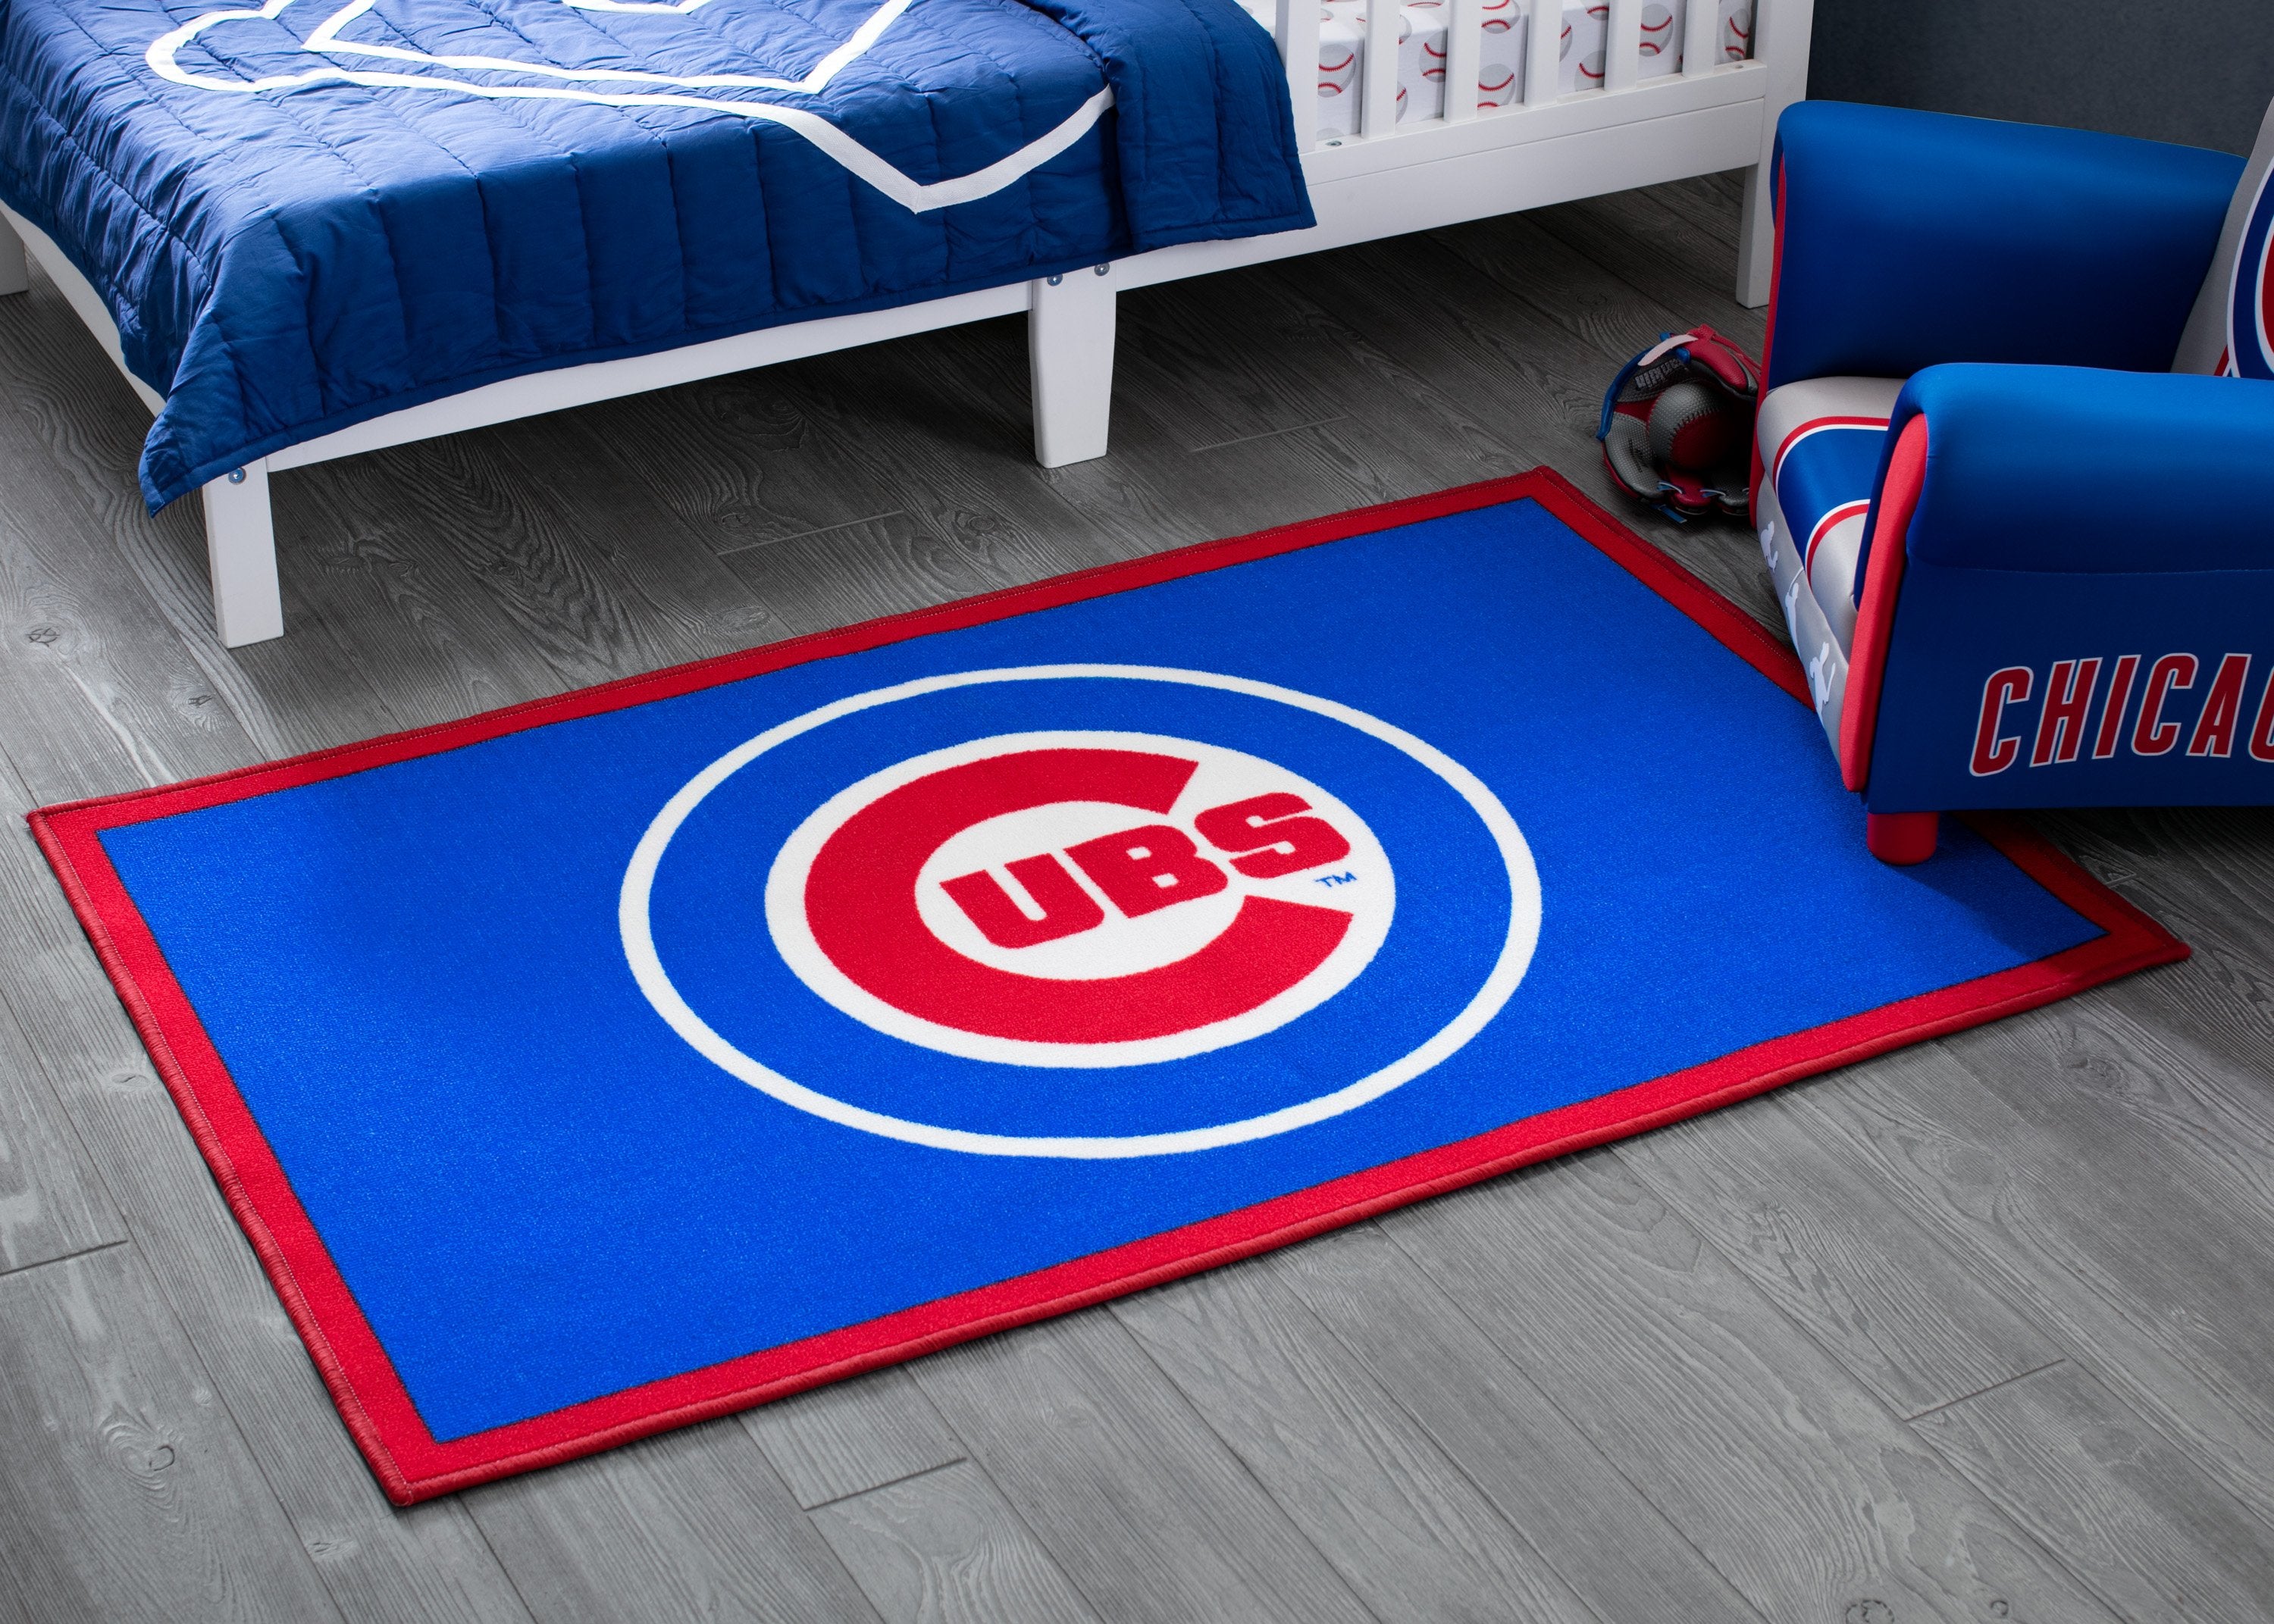 Chicago Cubs Plastic Toddler Bed - Delta Children